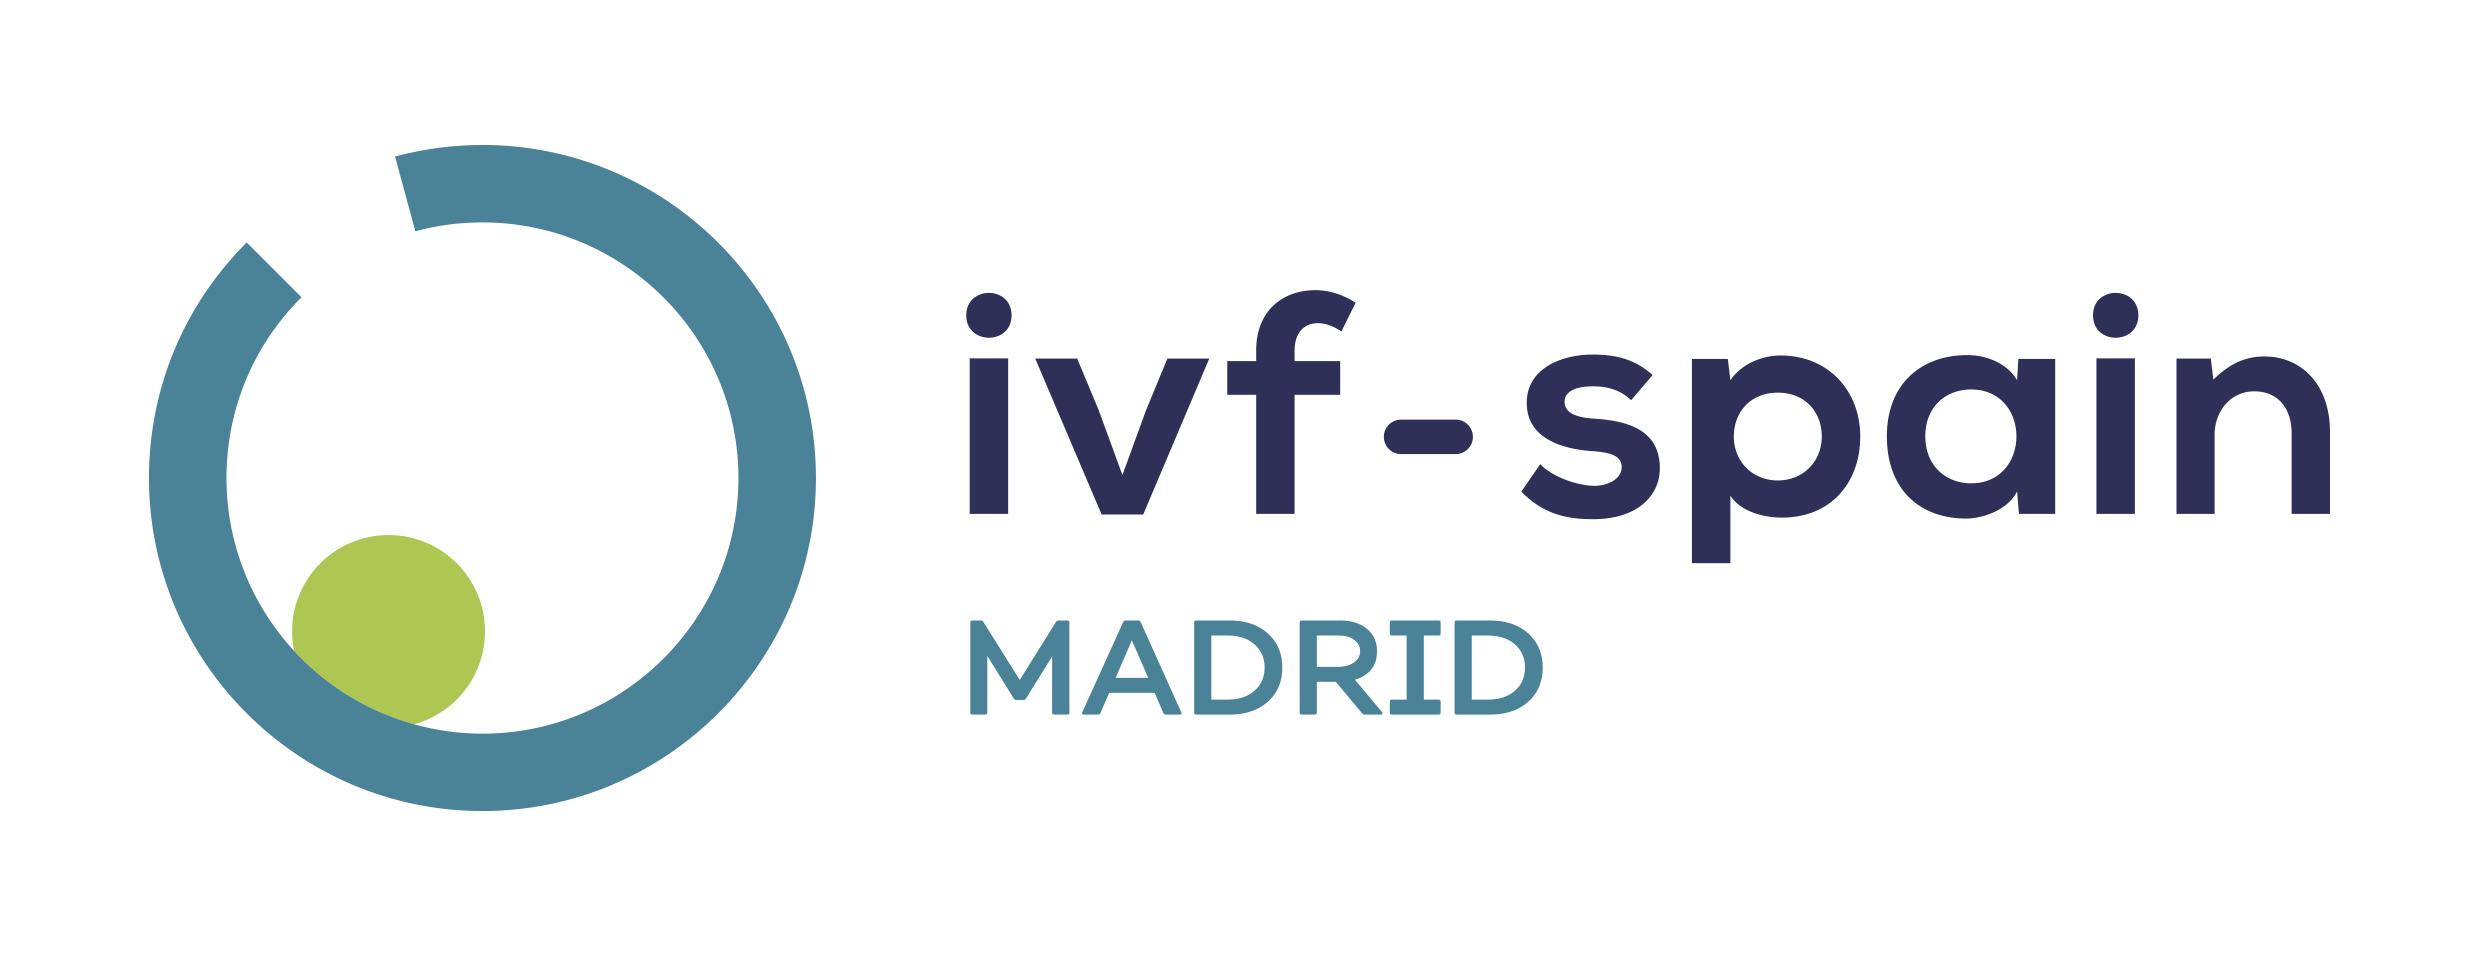 IVF-Spain